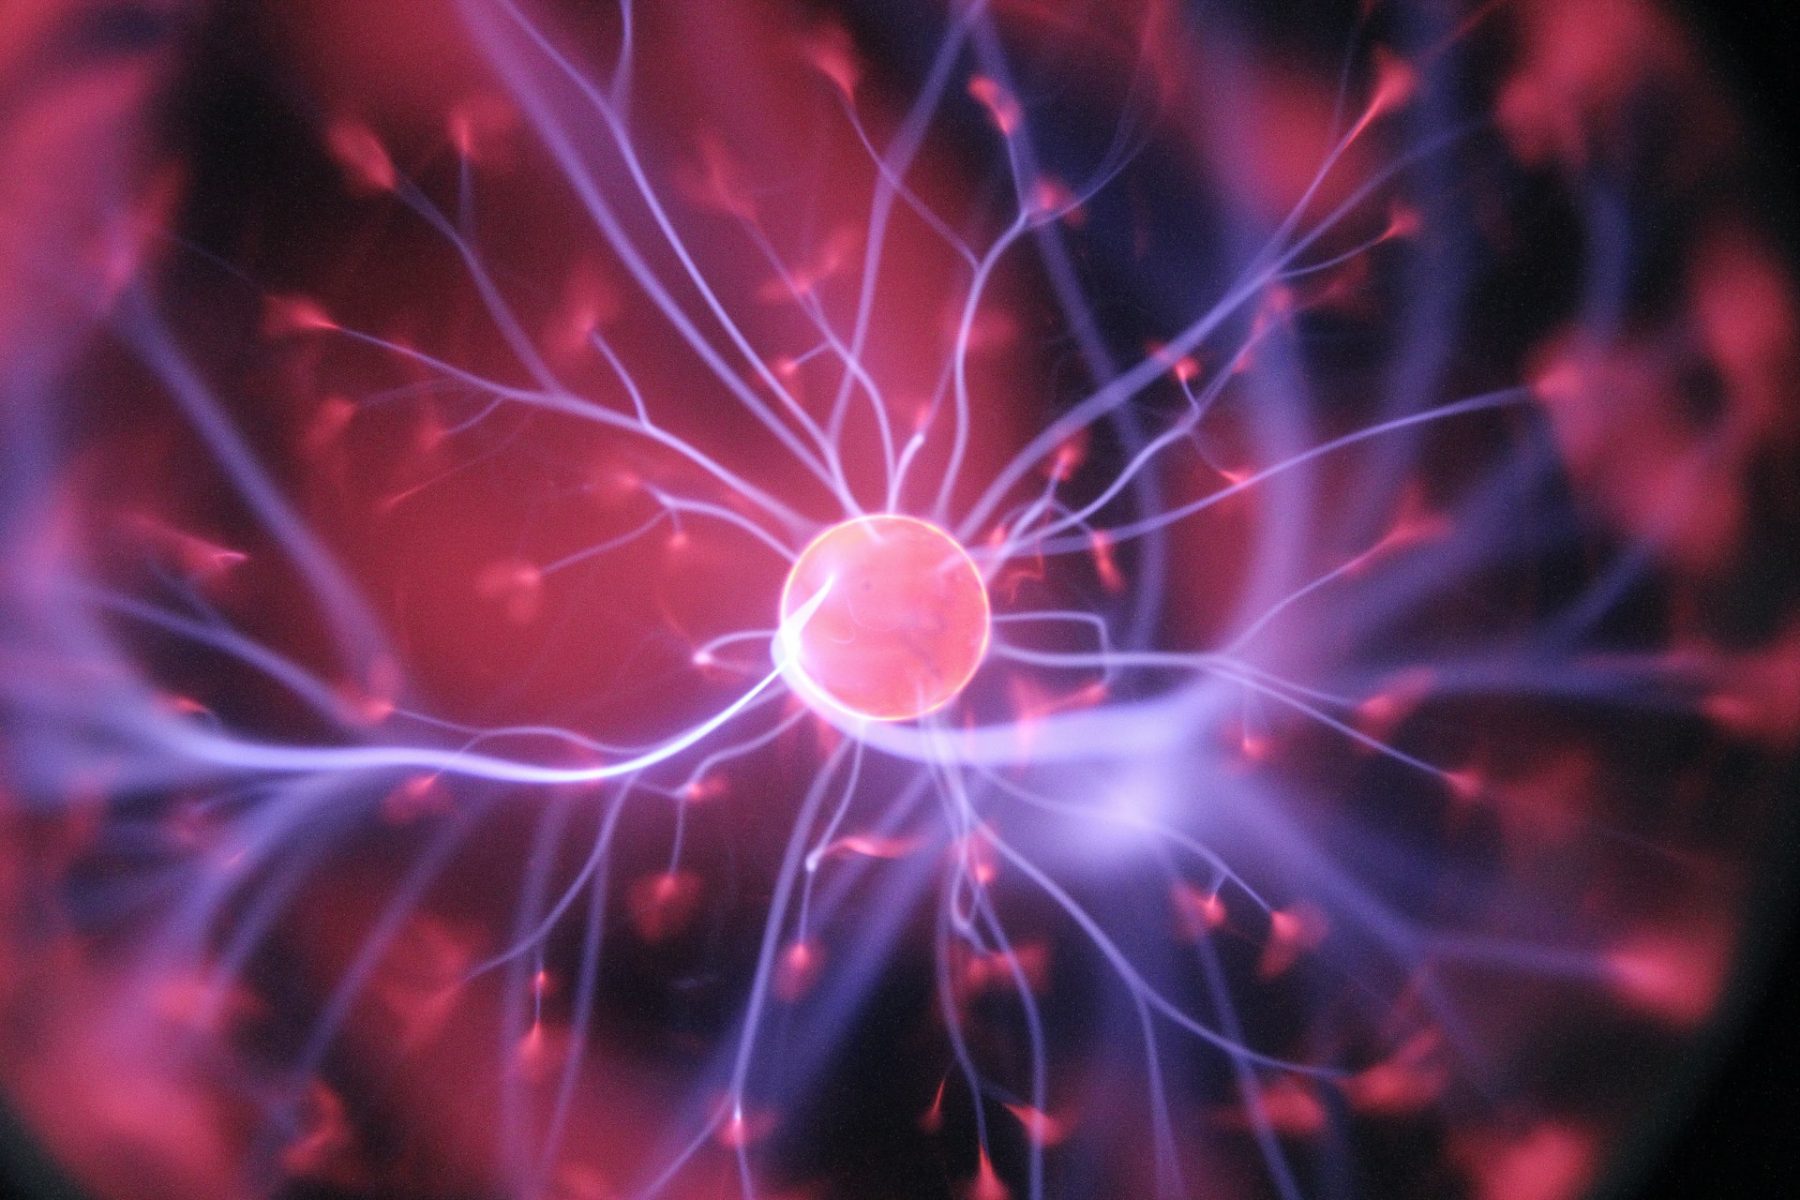 Νευρώνες εγκέφαλος: Γονιδιακή θεραπεία αποκαθιστά την όραση μετά από εγκεφαλικό επεισόδιο